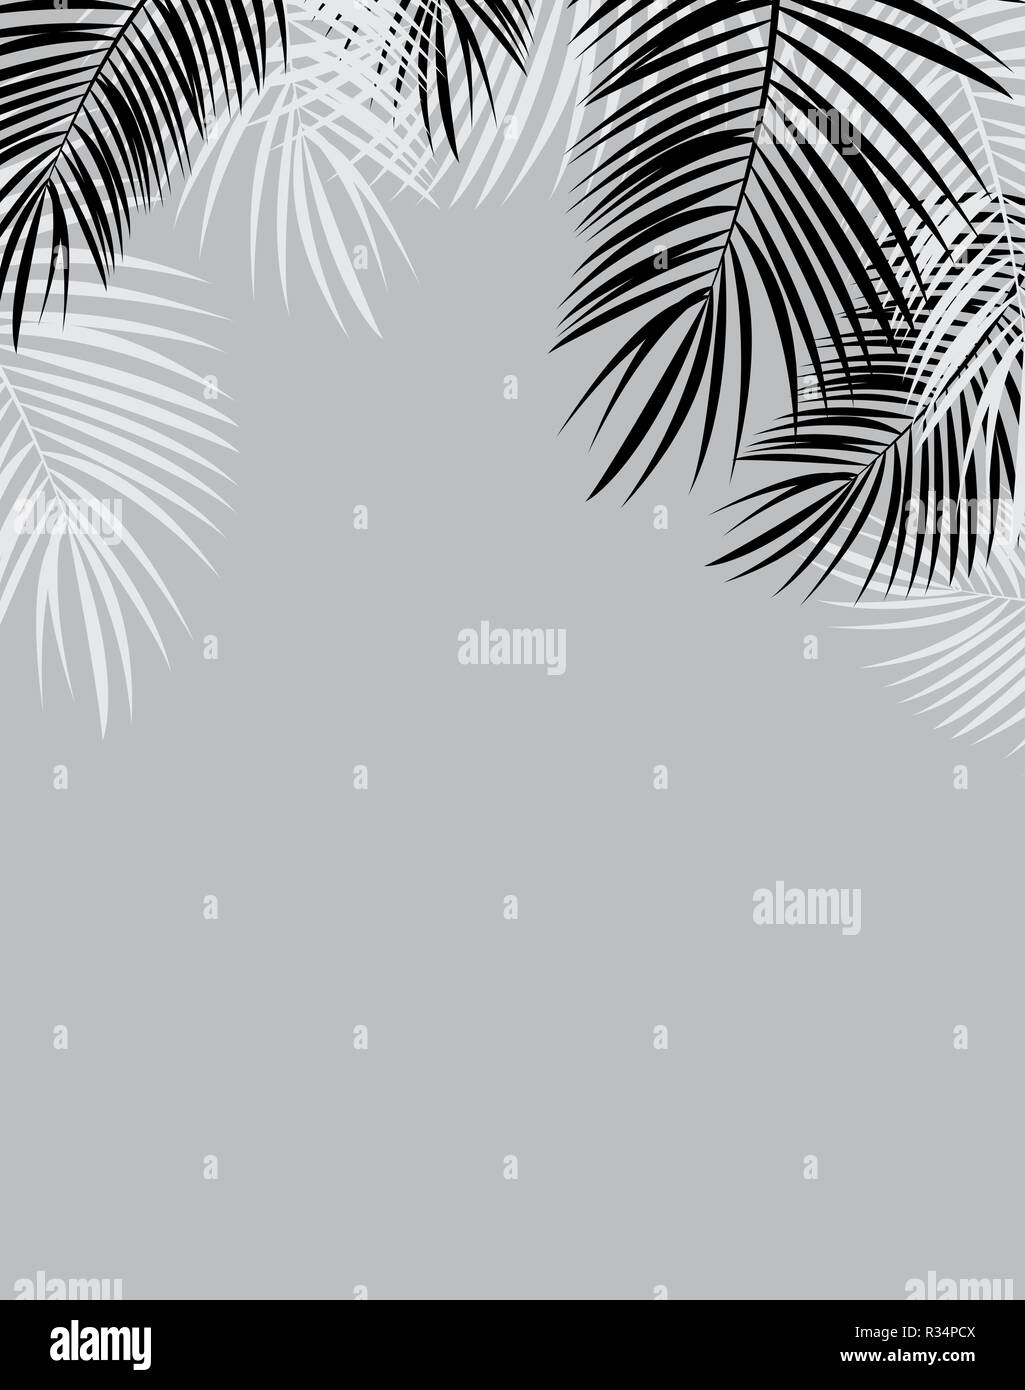 Schwarze und Weiße Palm Leaf Vektor Hintergrundbild Stock Vektor